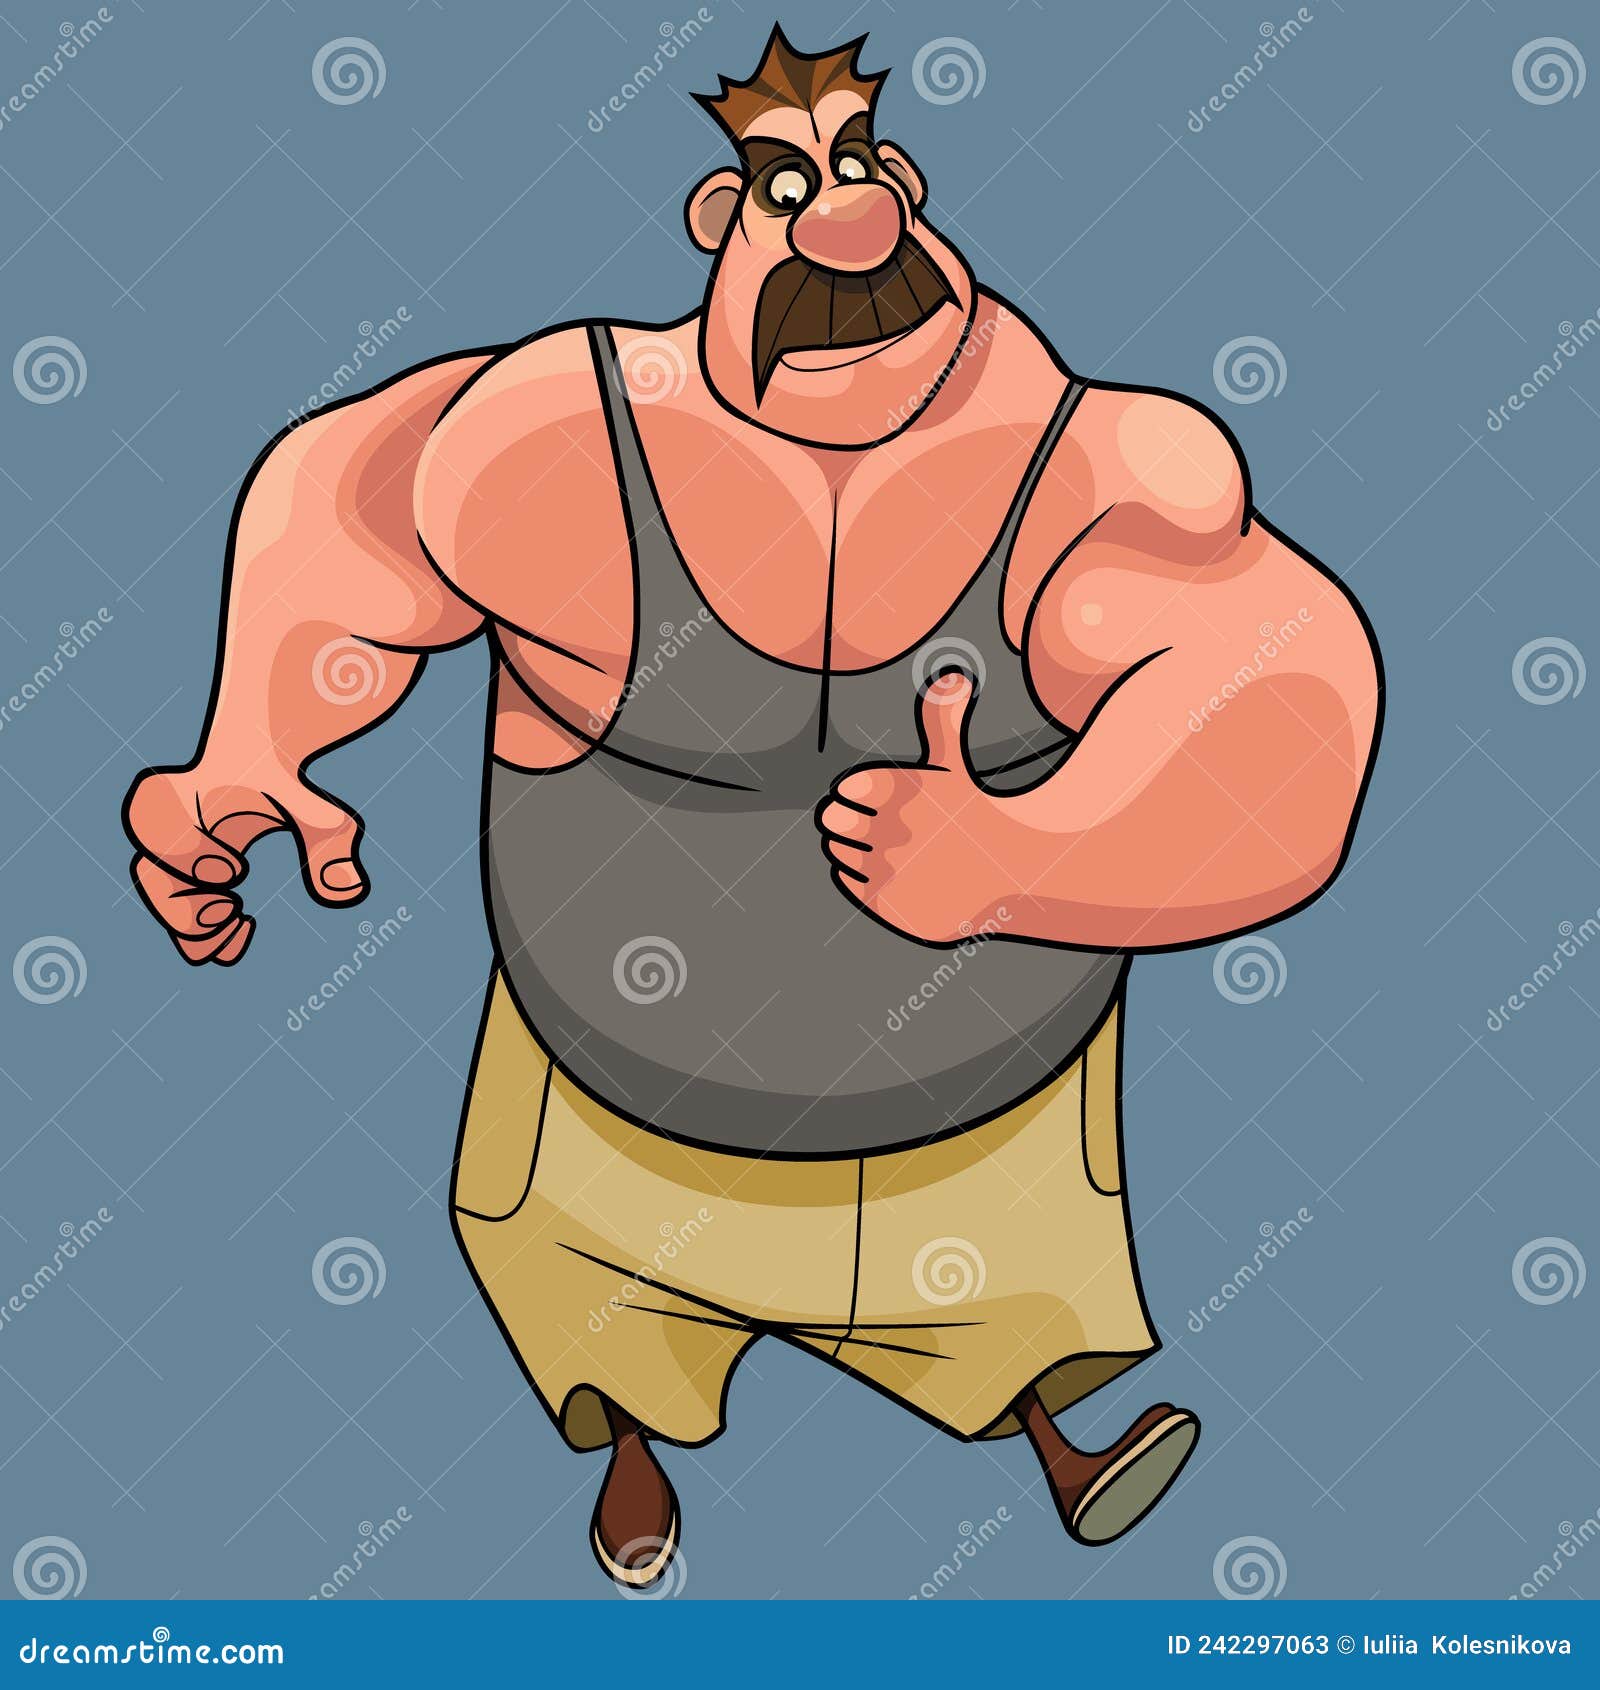 https://thumbs.dreamstime.com/z/cartoon-muscular-homem-fisiculturista-mostarda-no-topo-do-tanque-mostrando-polegares-para-cima-desenho-animado-o-gesto-de-242297063.jpg